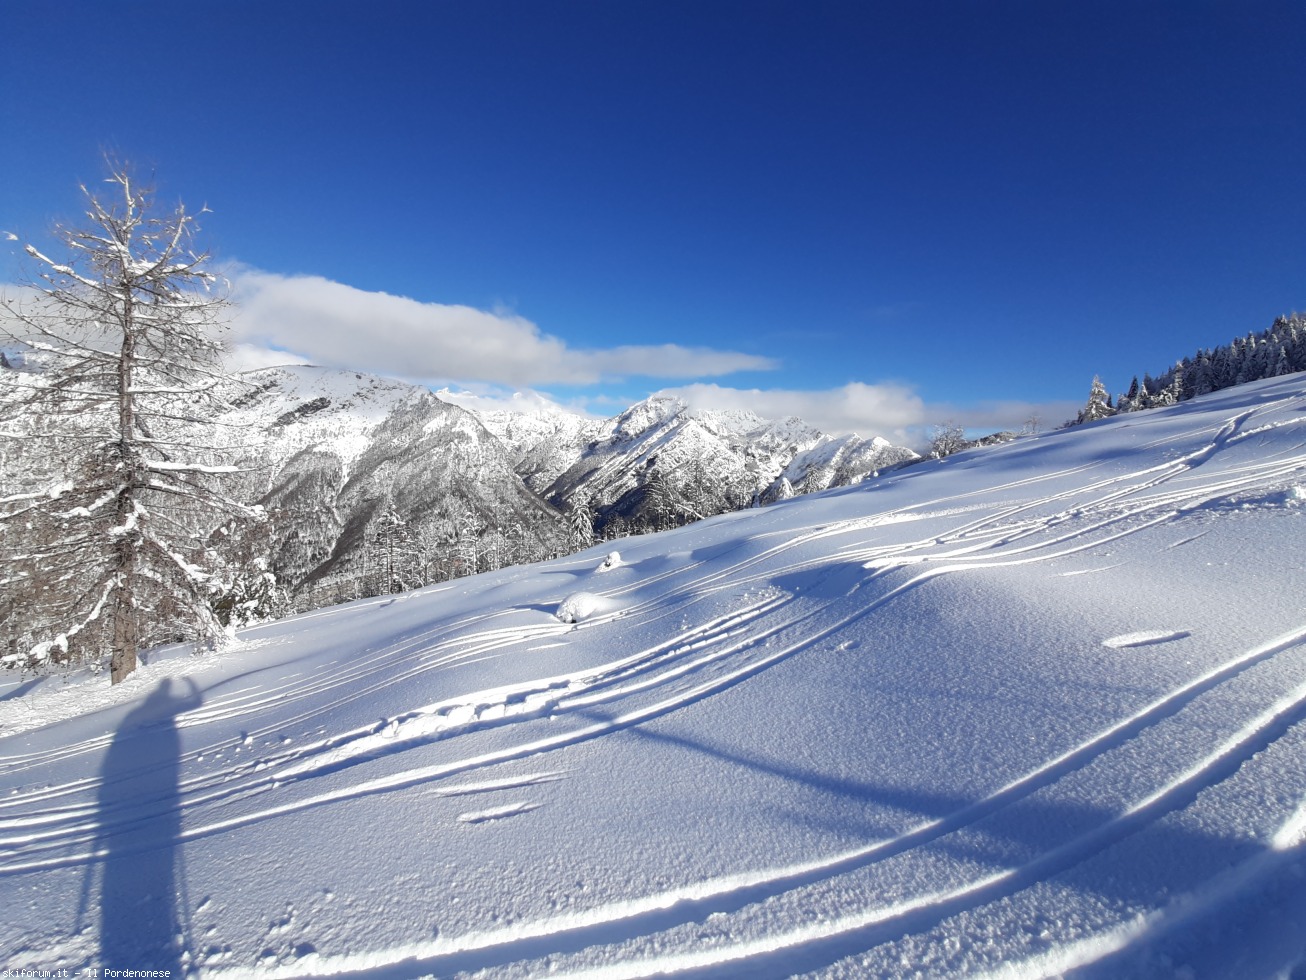 skialp] Rifugio Pradut - dolomiti friulane, dicembre 2020 | SkiForum - Sci,  turismo, sport e passione